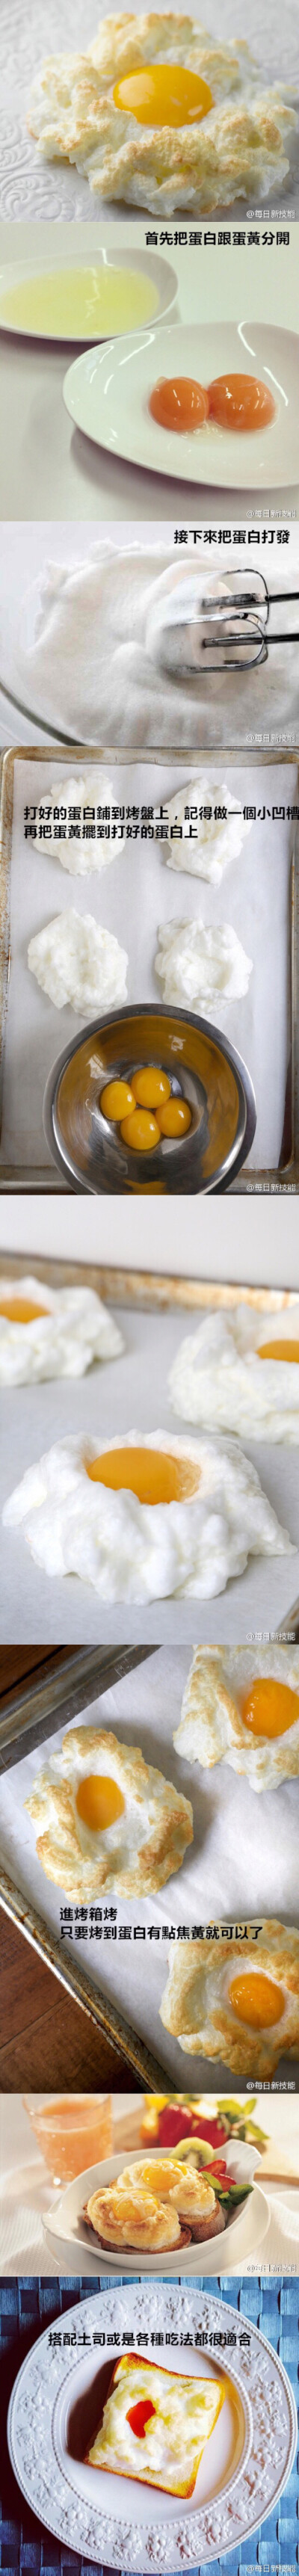 鸡蛋还可以烤着吃。这样吃挺独特的～